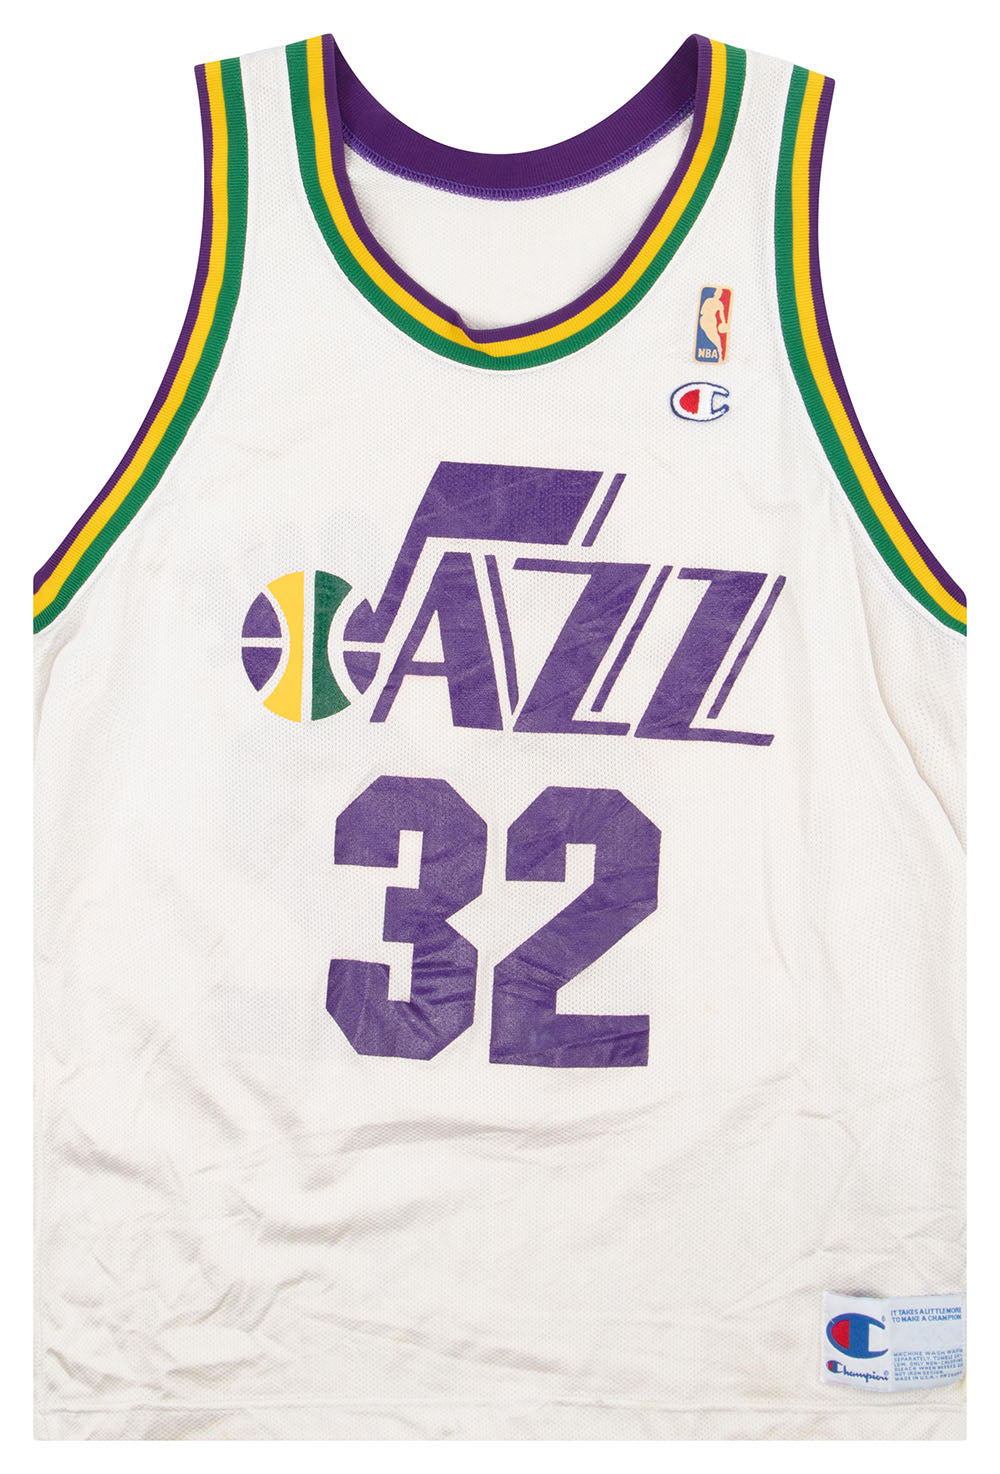 Vintage 90s Champion Utah Jazz Karl Malone jersey 44 LARGE white